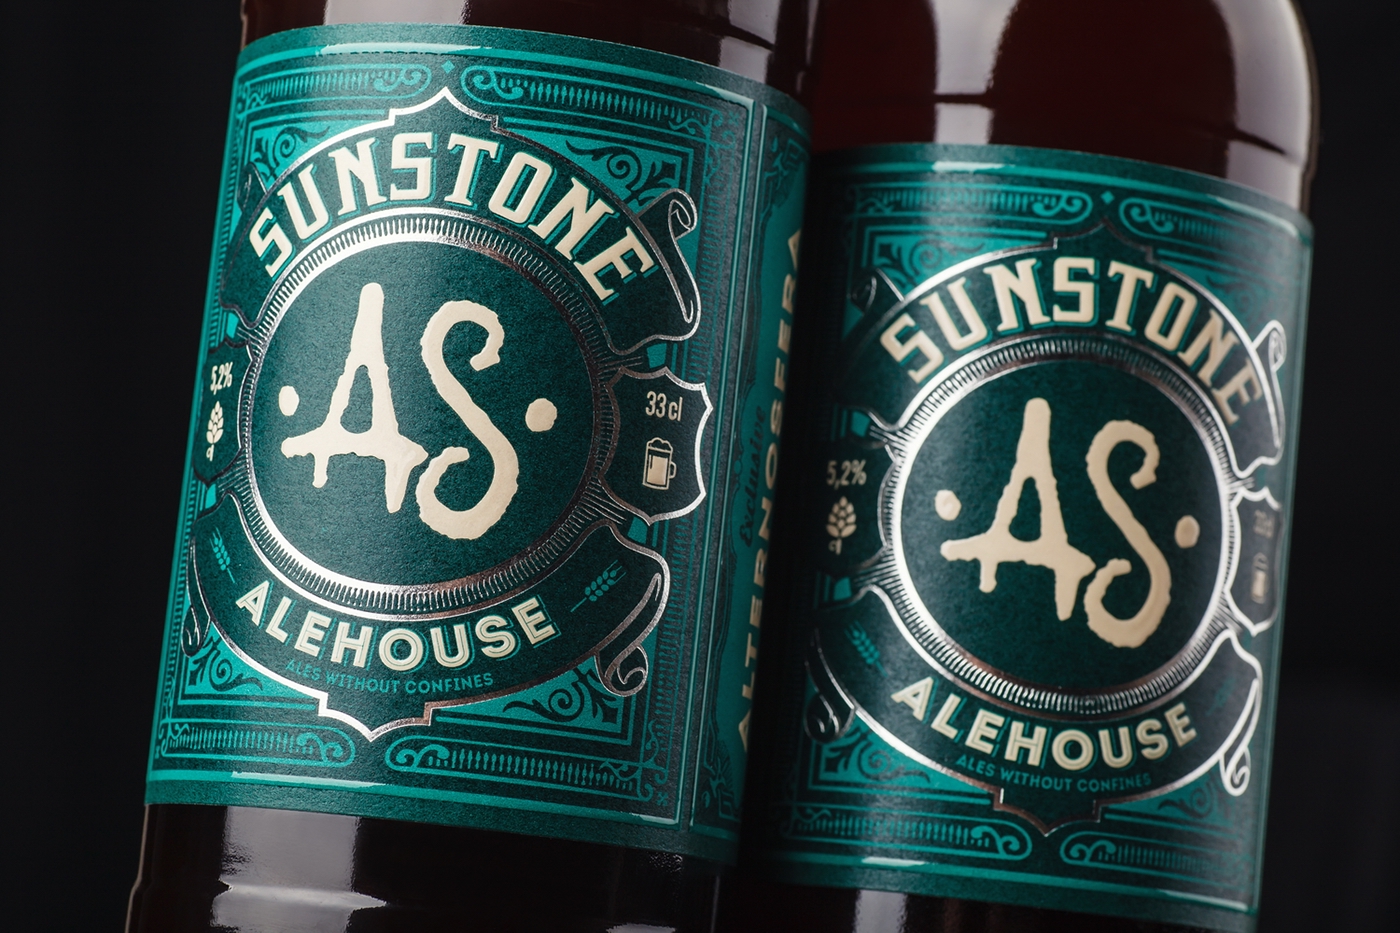 craft beer 43oz design studio sunstone alehouse beer beer label packaging design